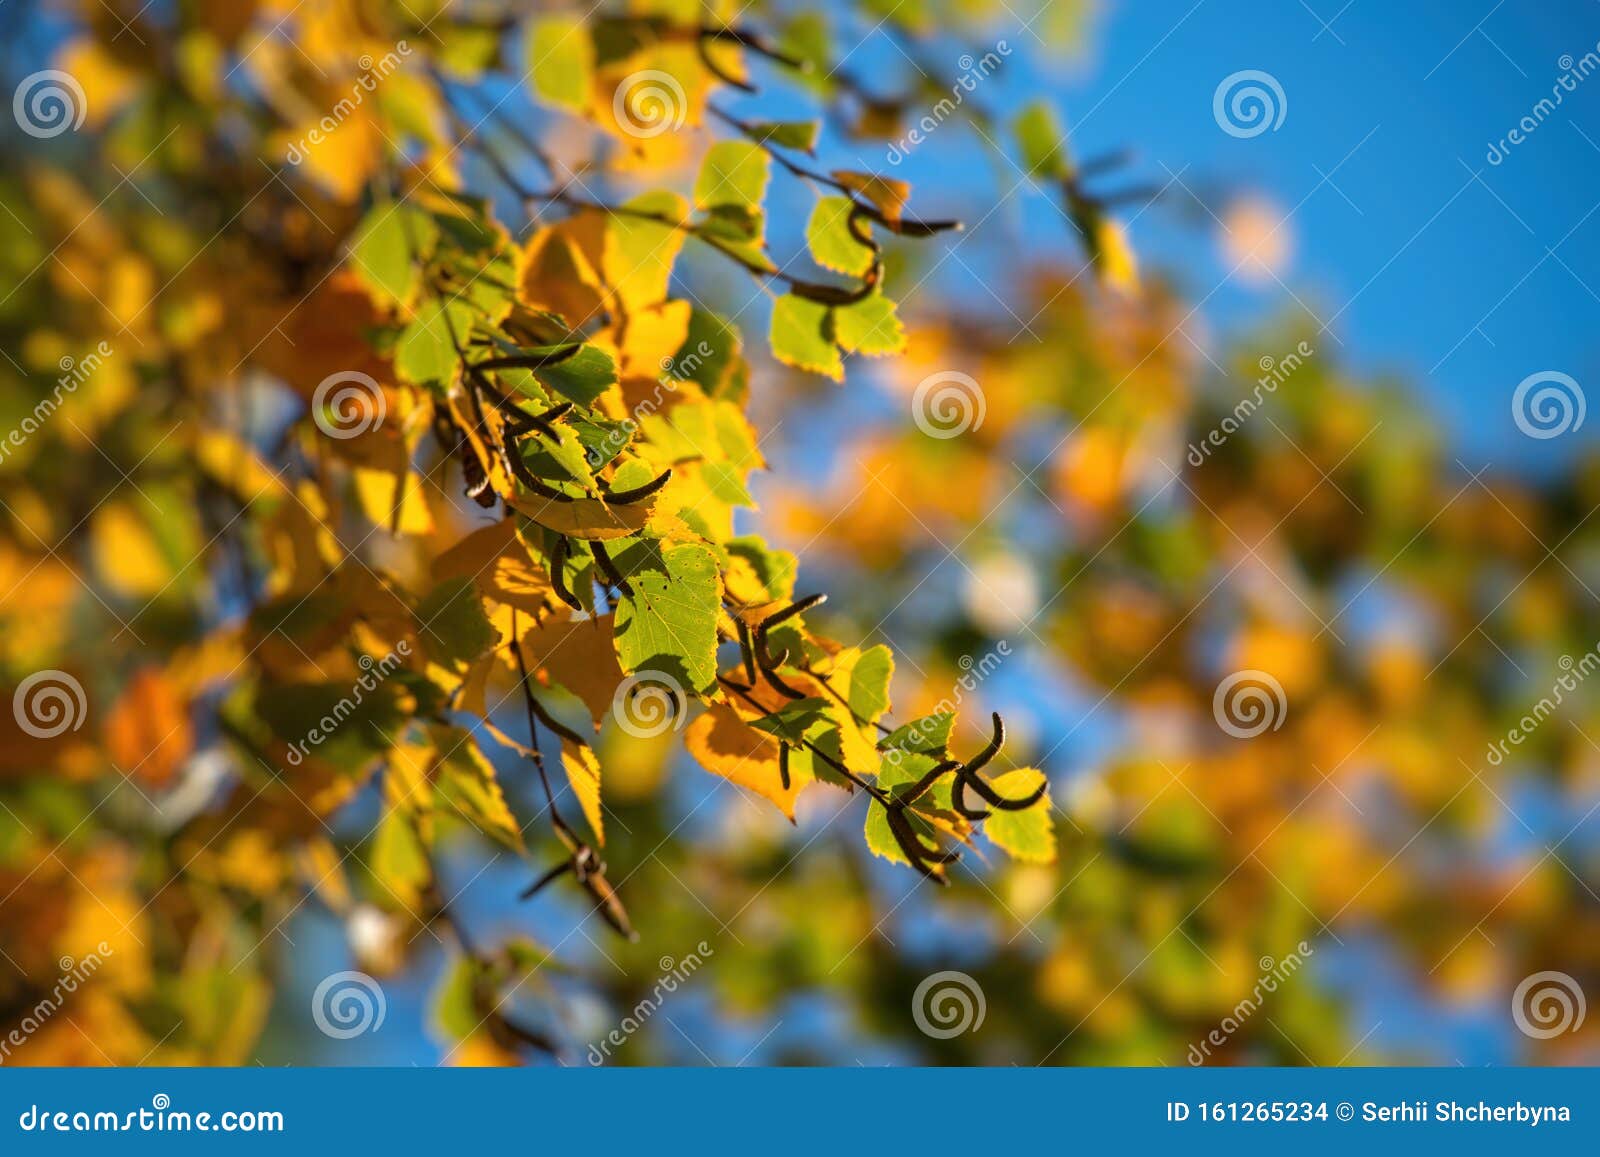 Mùa thu đến rồi, những cánh lá vàng cam đỏ rực rỡ tràn ngập khắp nơi. Nếu bạn không muốn bỏ lỡ cảnh tượng đẹp như tranh vẽ này, hãy xem hình ảnh để cảm nhận tất cả những điều tuyệt vời của mùa thu này.